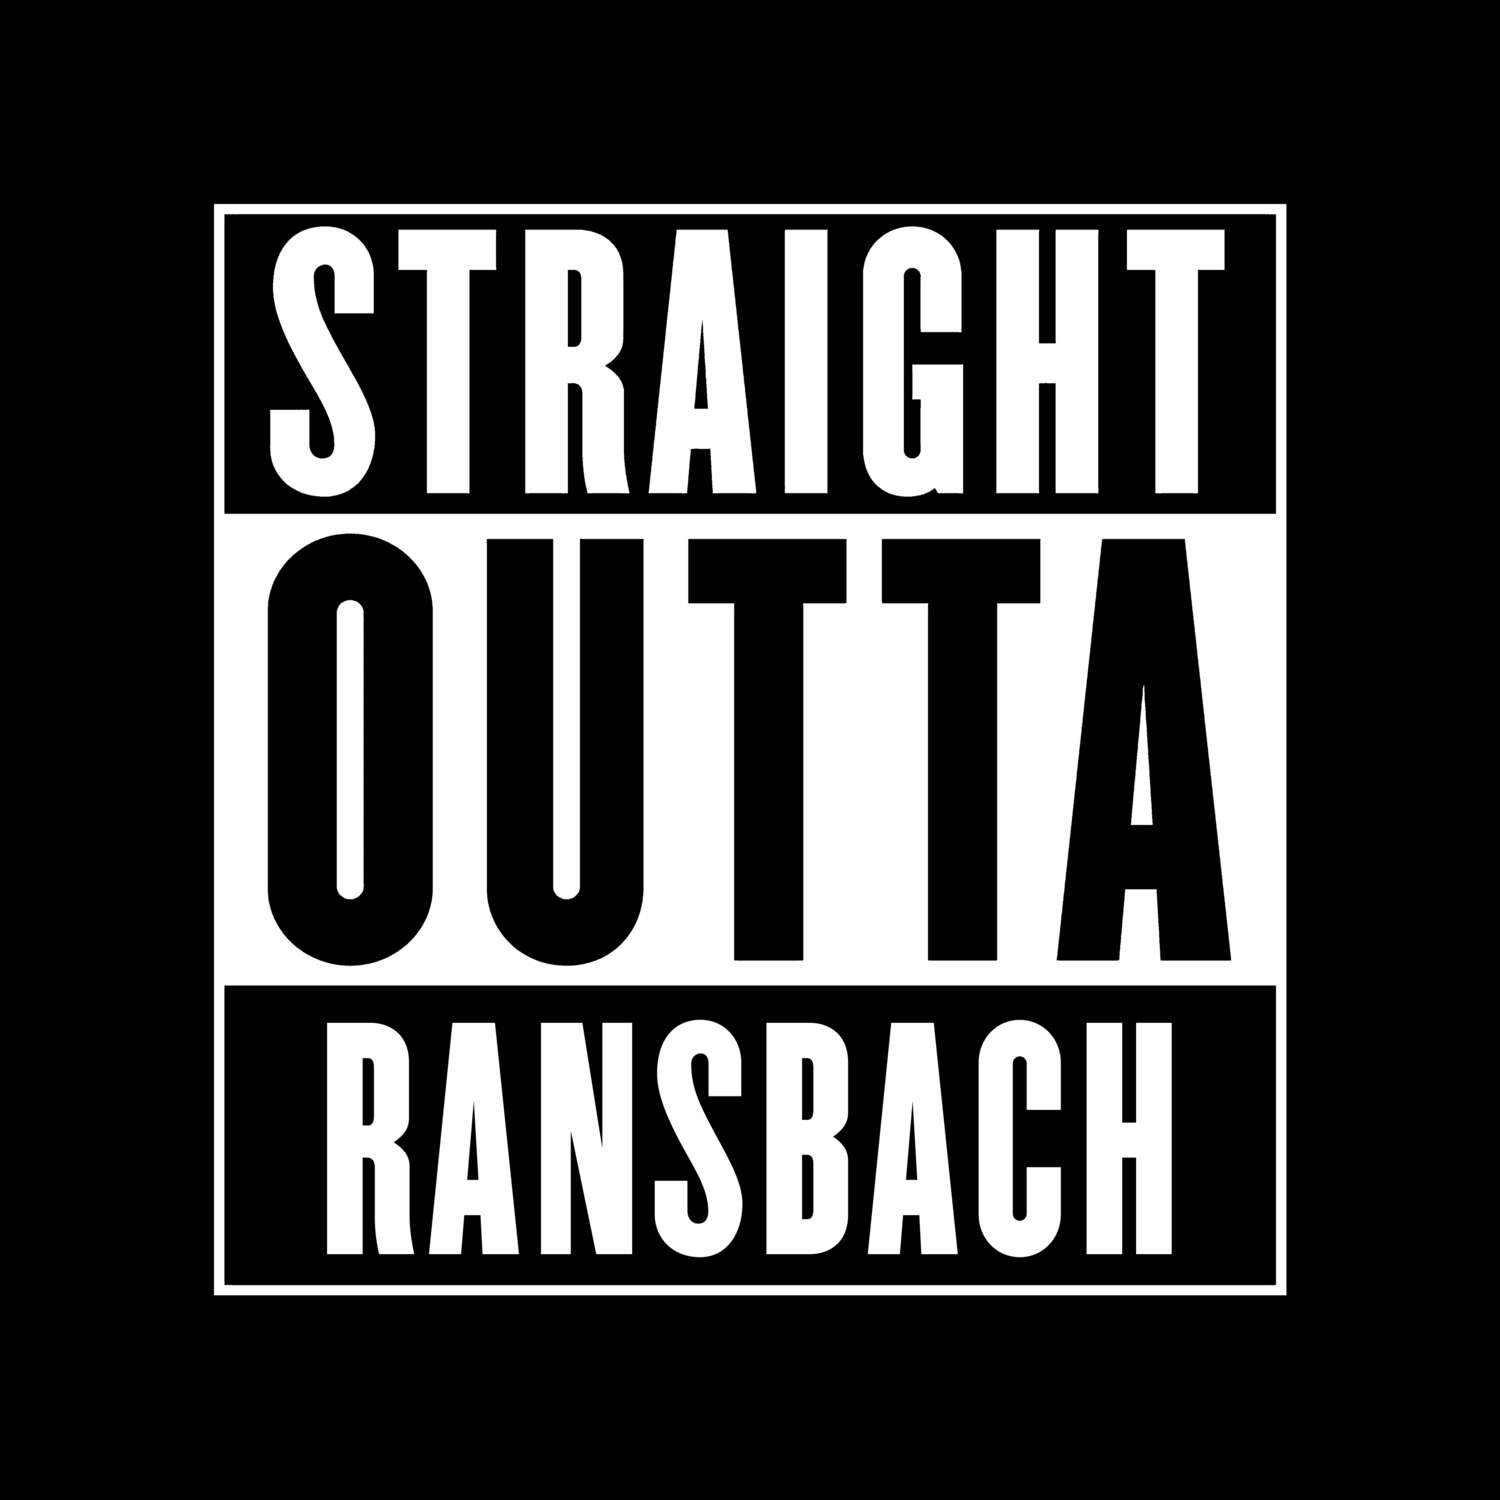 Ransbach T-Shirt »Straight Outta«